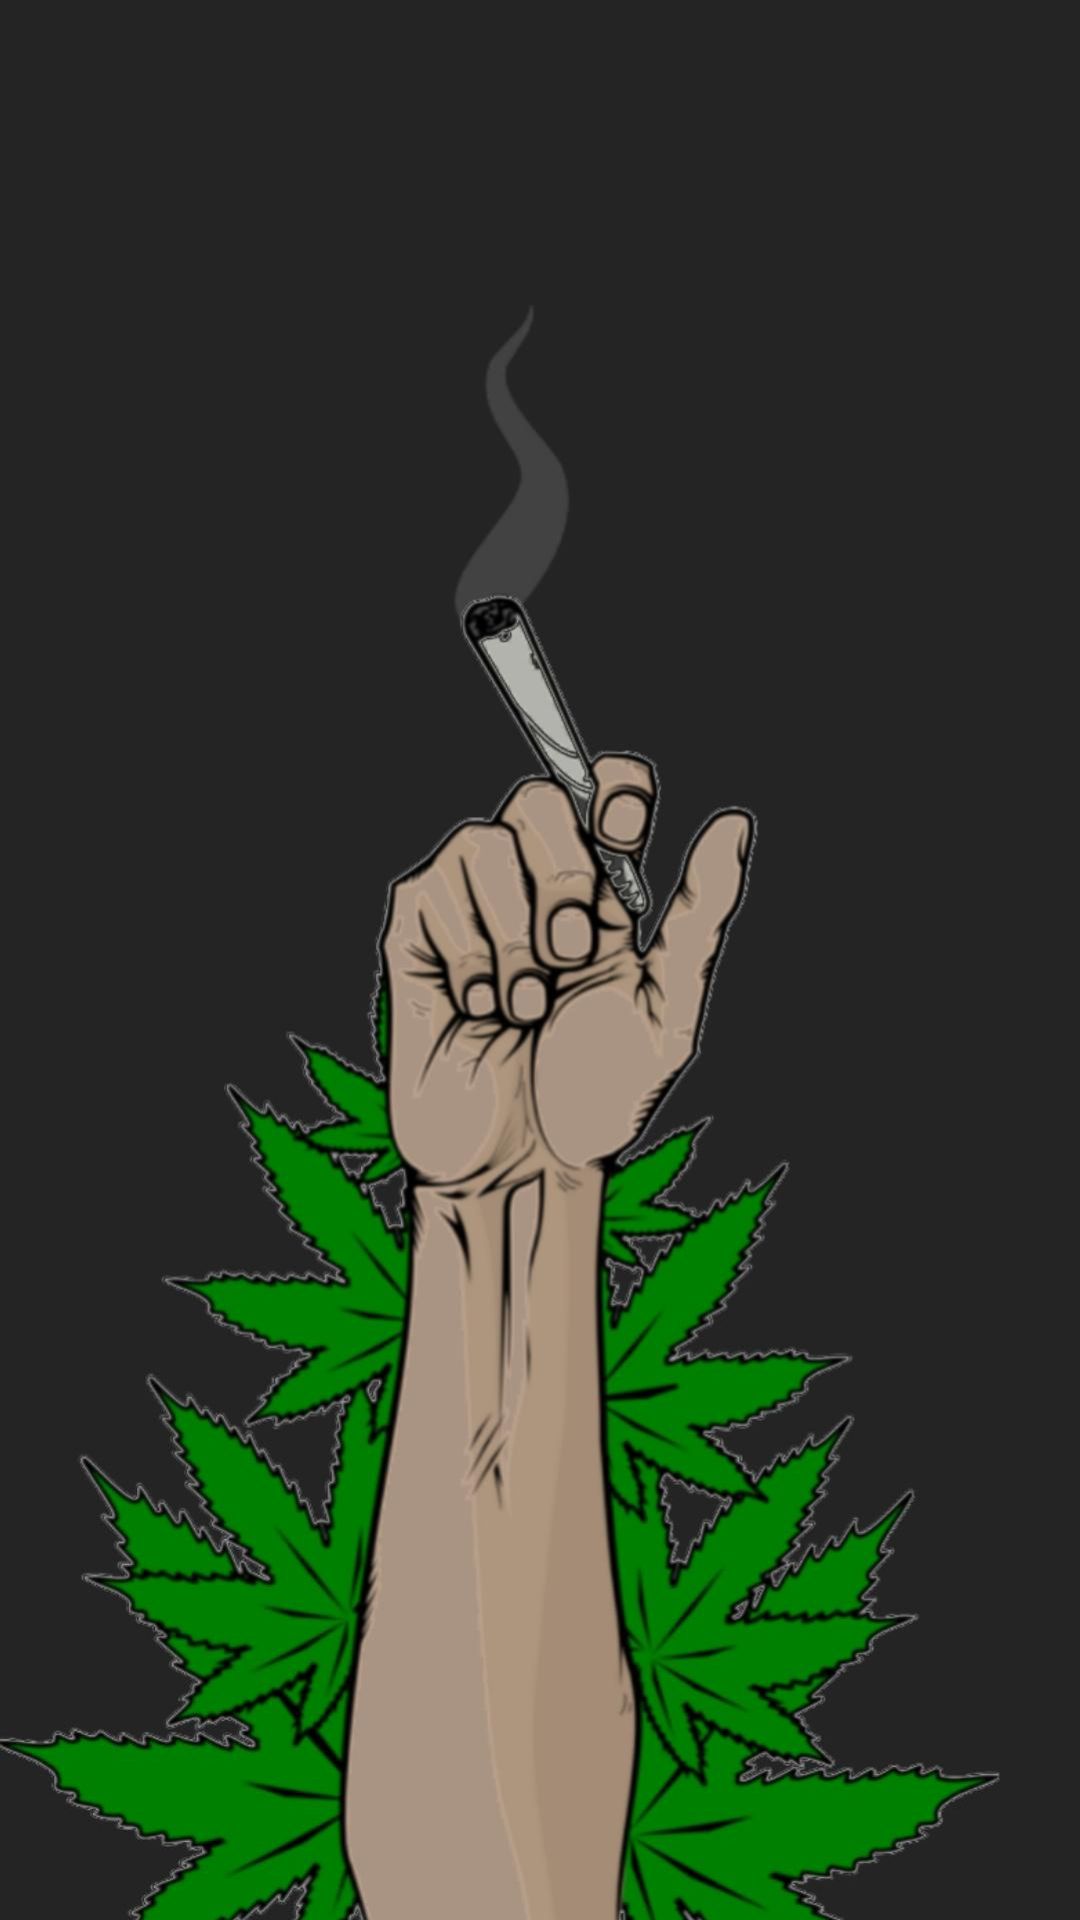 Download Free 100 + smoking weed wallpaper